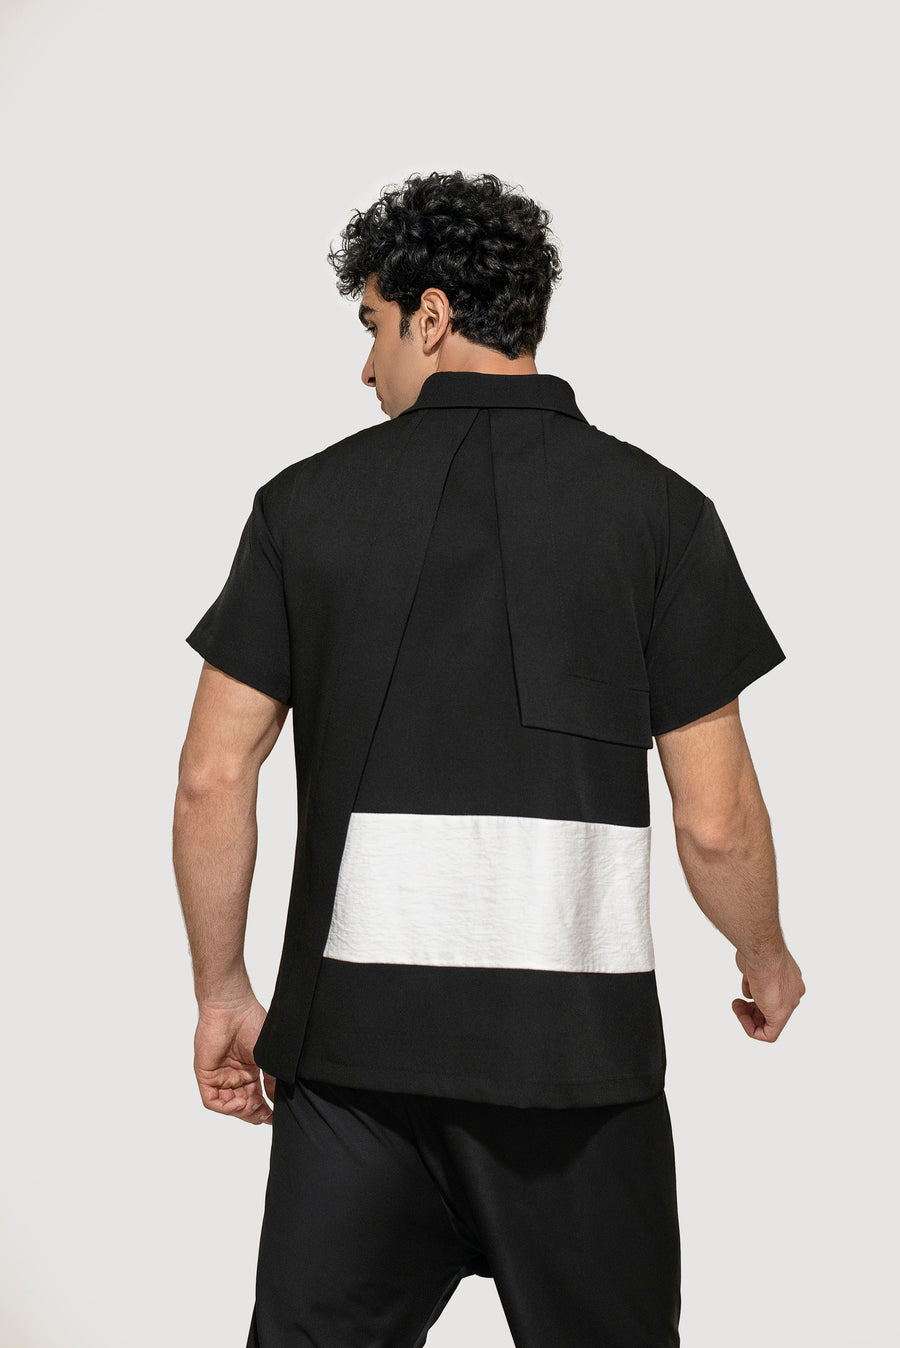 Black And White Zip Up Shirt